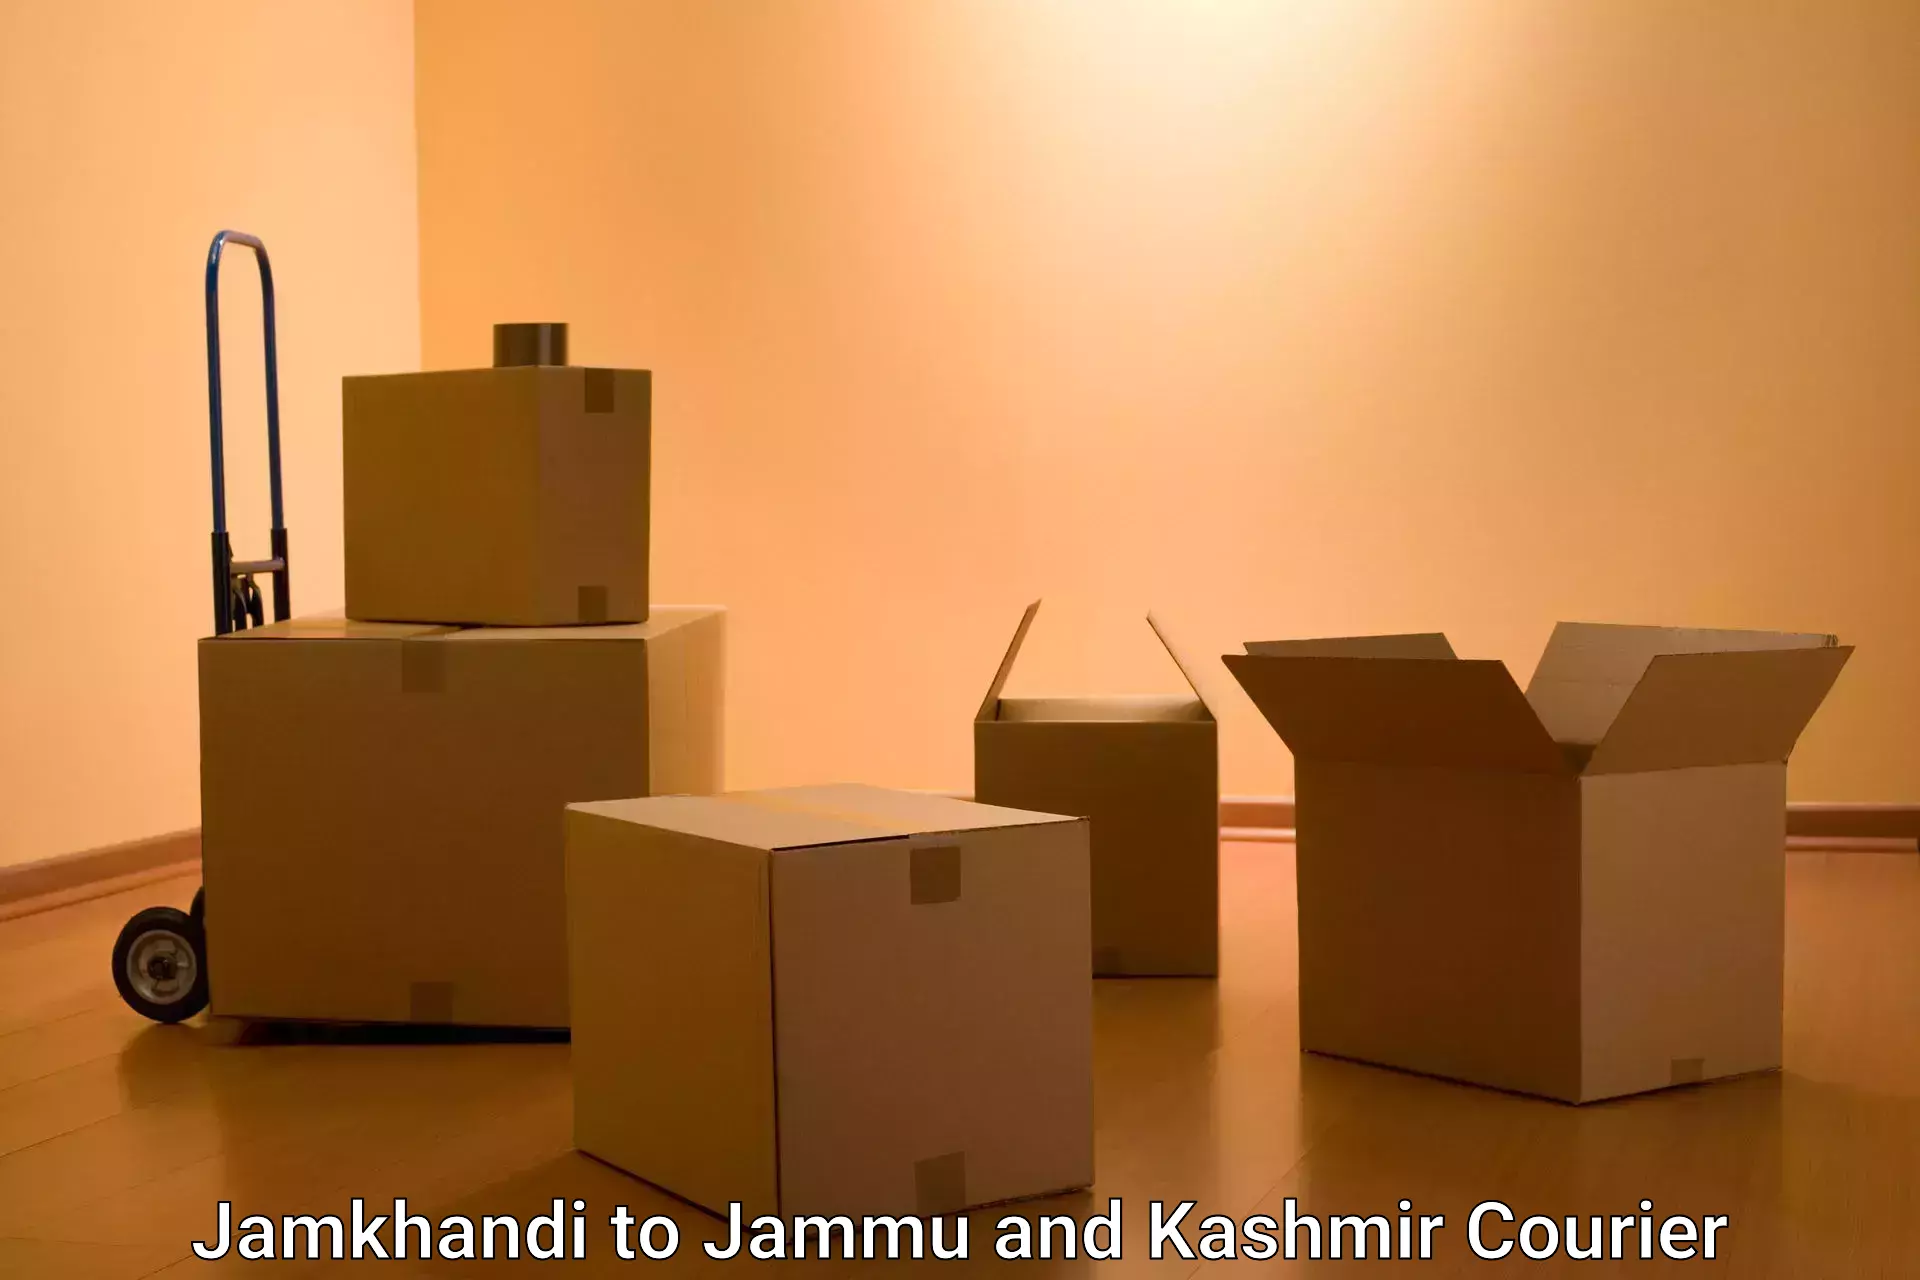 End-to-end delivery Jamkhandi to Kargil